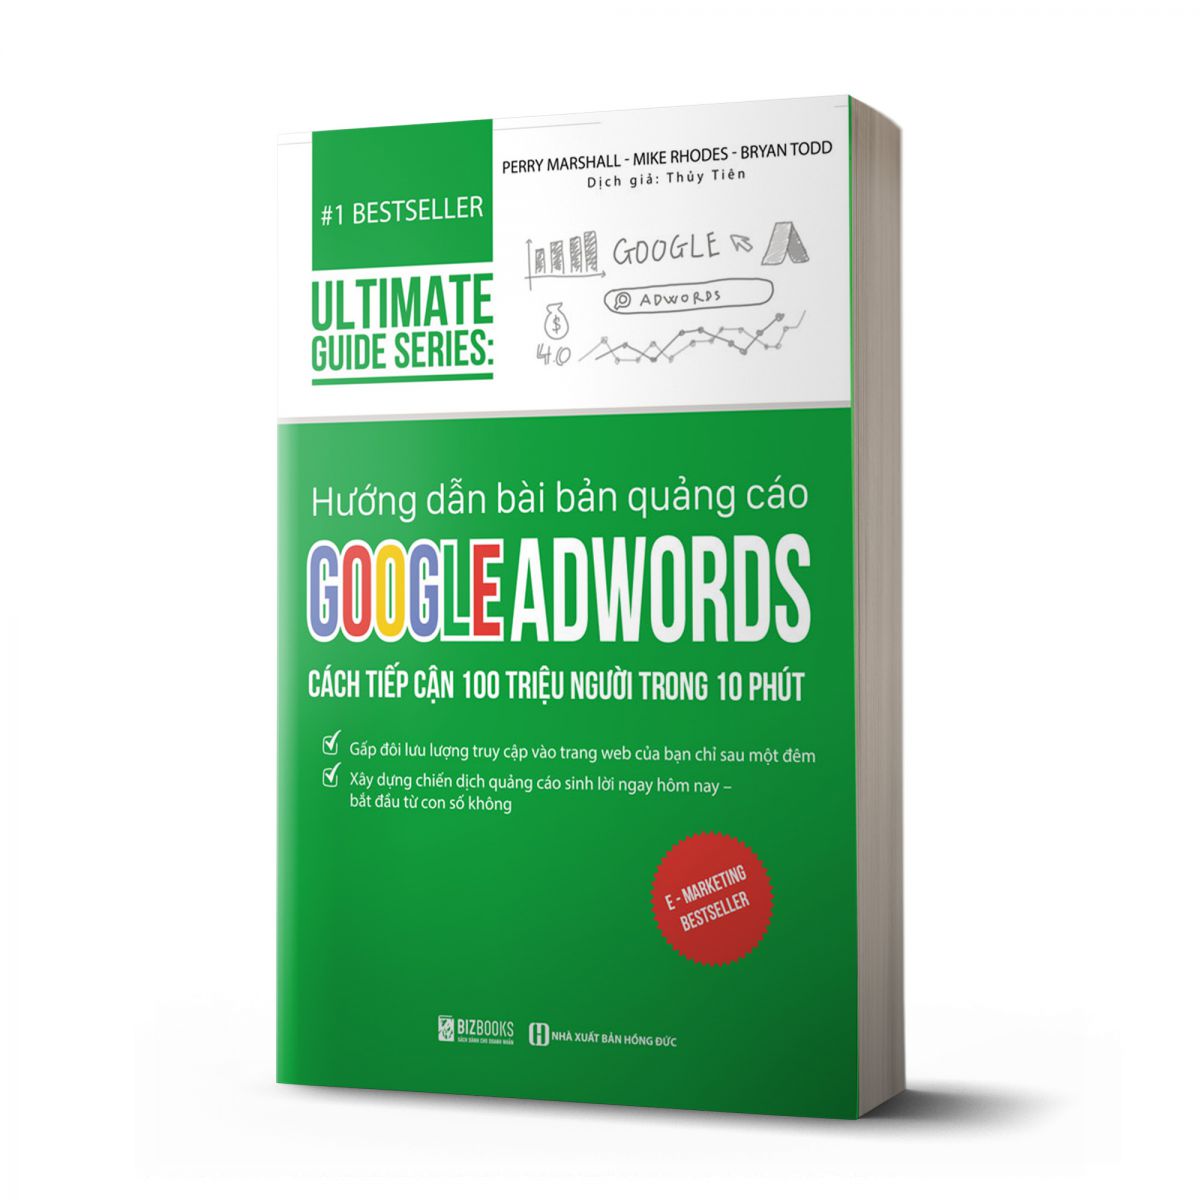 Hướng dẫn bài bản quảng cáo google adwords: Cách tiếp cận 100 triệu người trong 10 phút | Ultimate Guide Series 1 